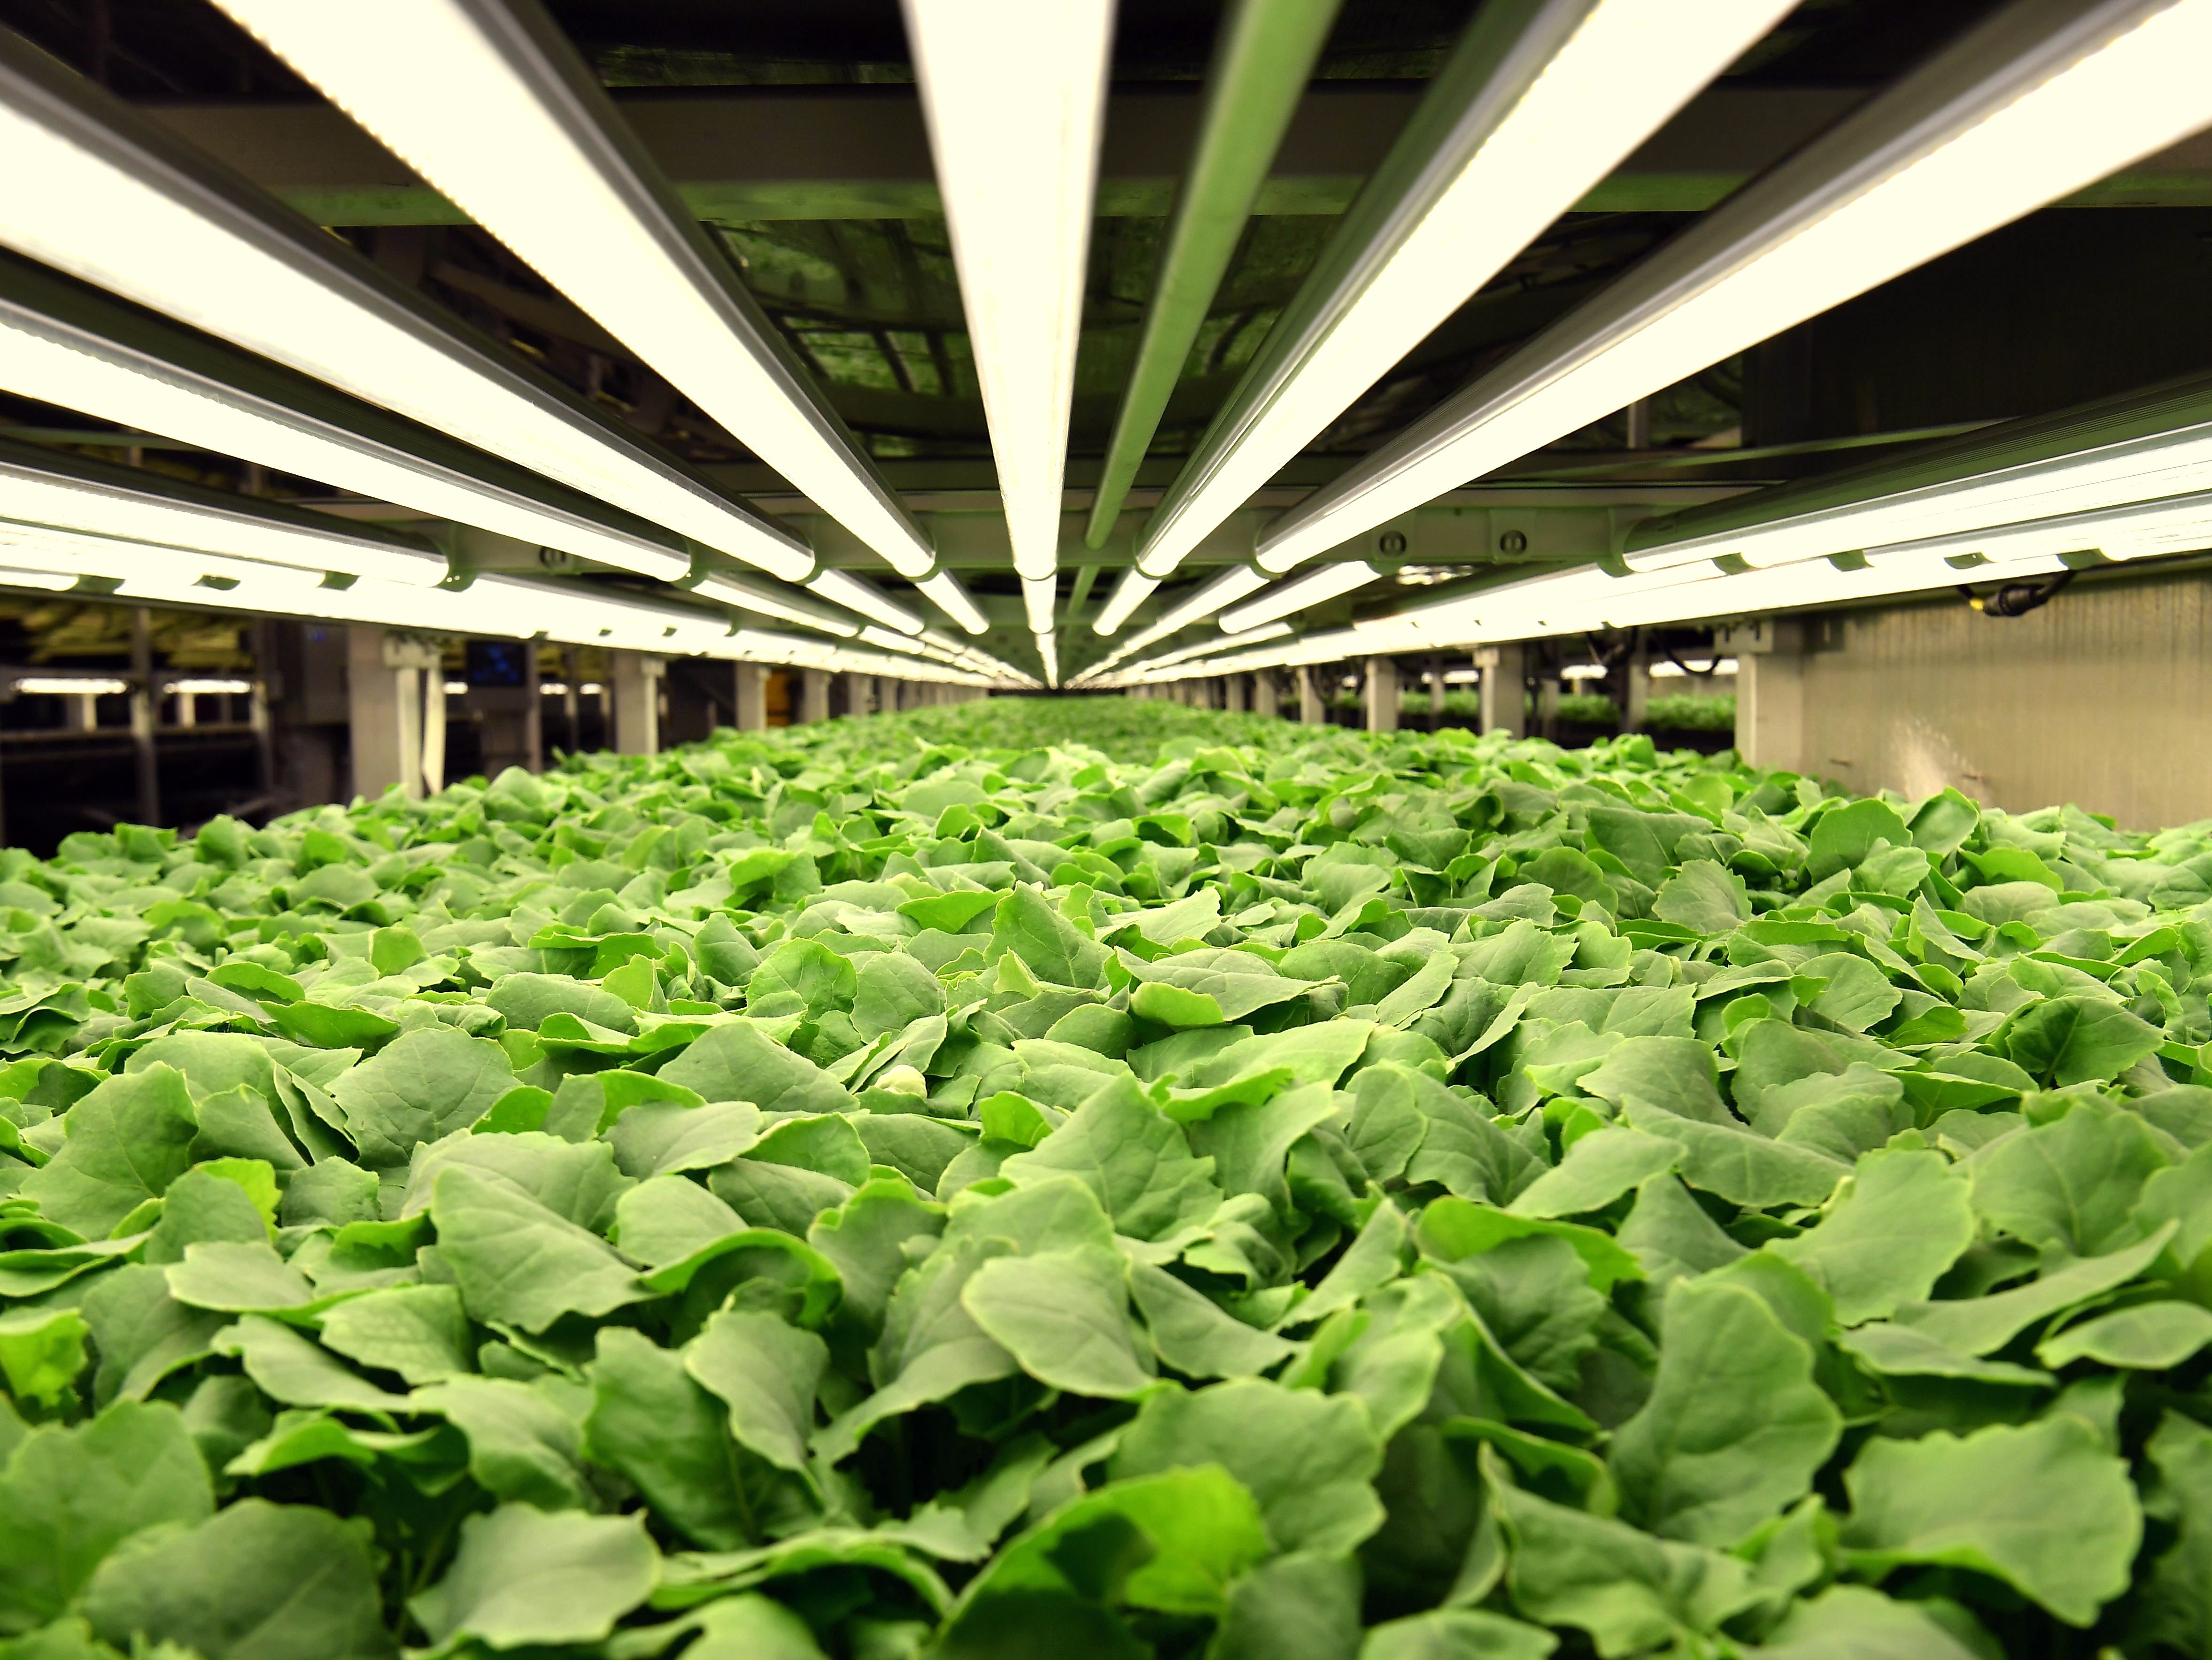 Jersey City Pilots Indoor Vertical Farming To Benefit Communities - Bloomberg